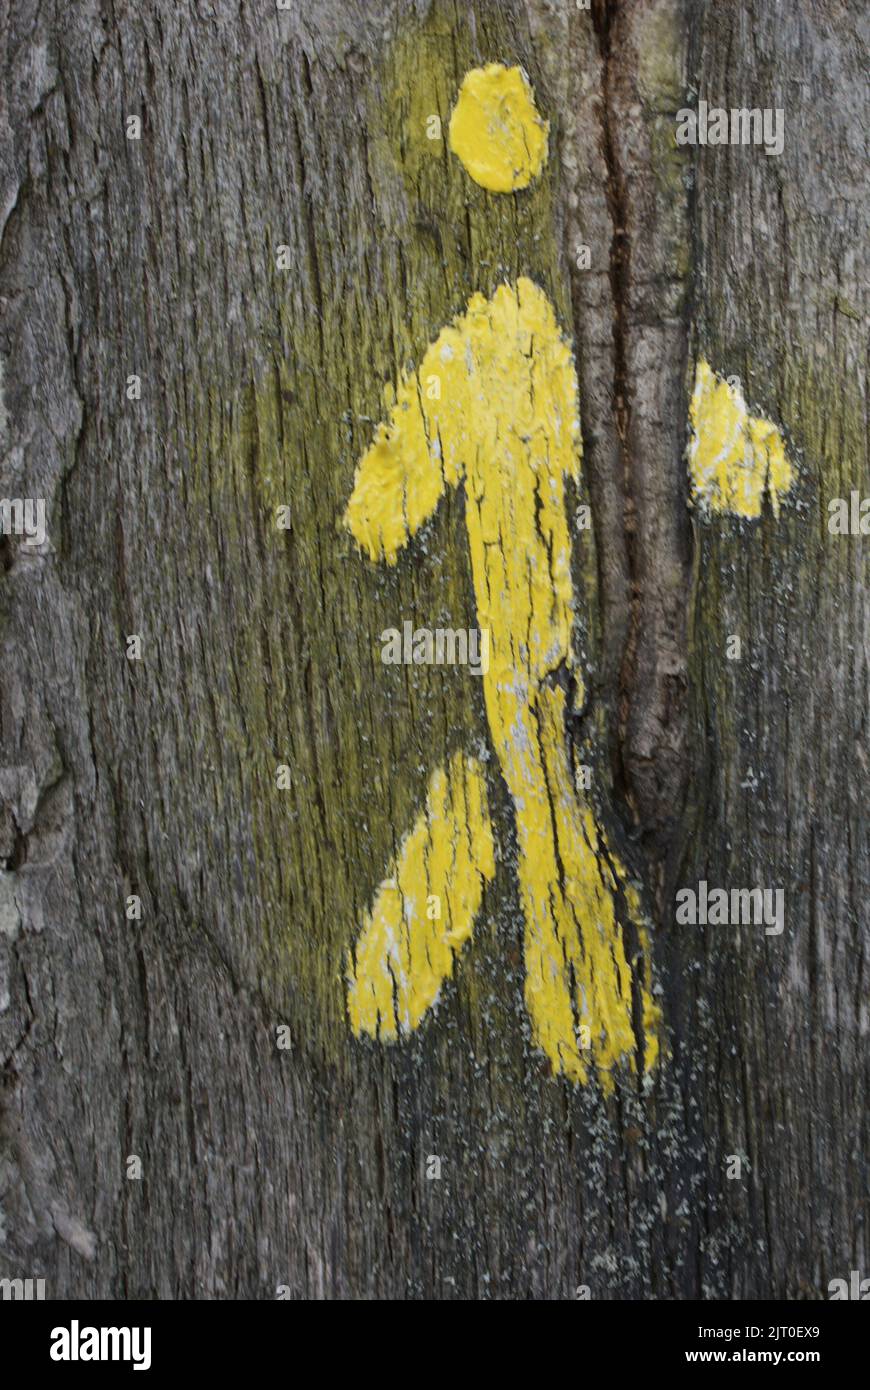 Un bonhomme jaune sur un arbre, France Stock Photo